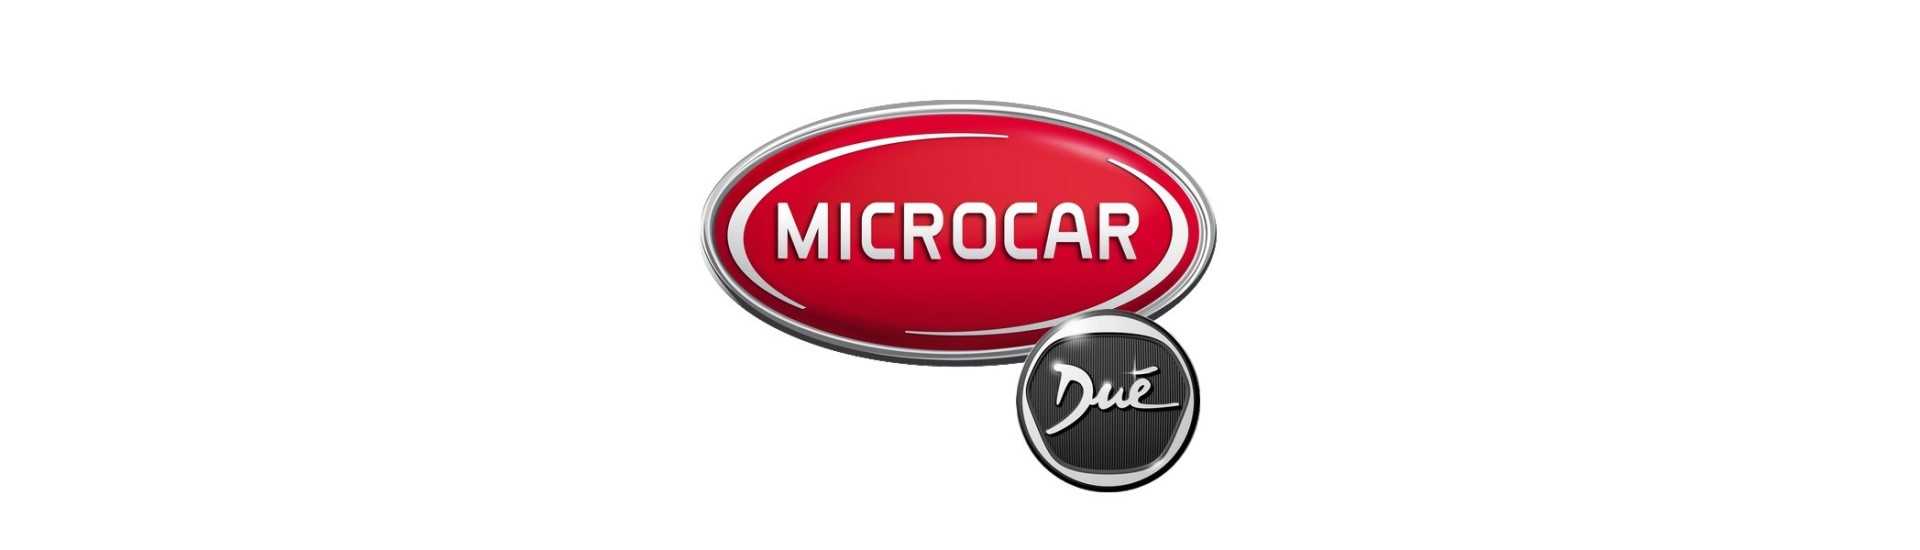 Styrkolumn till bästa bilpris utan tillstånd Microcar Dué